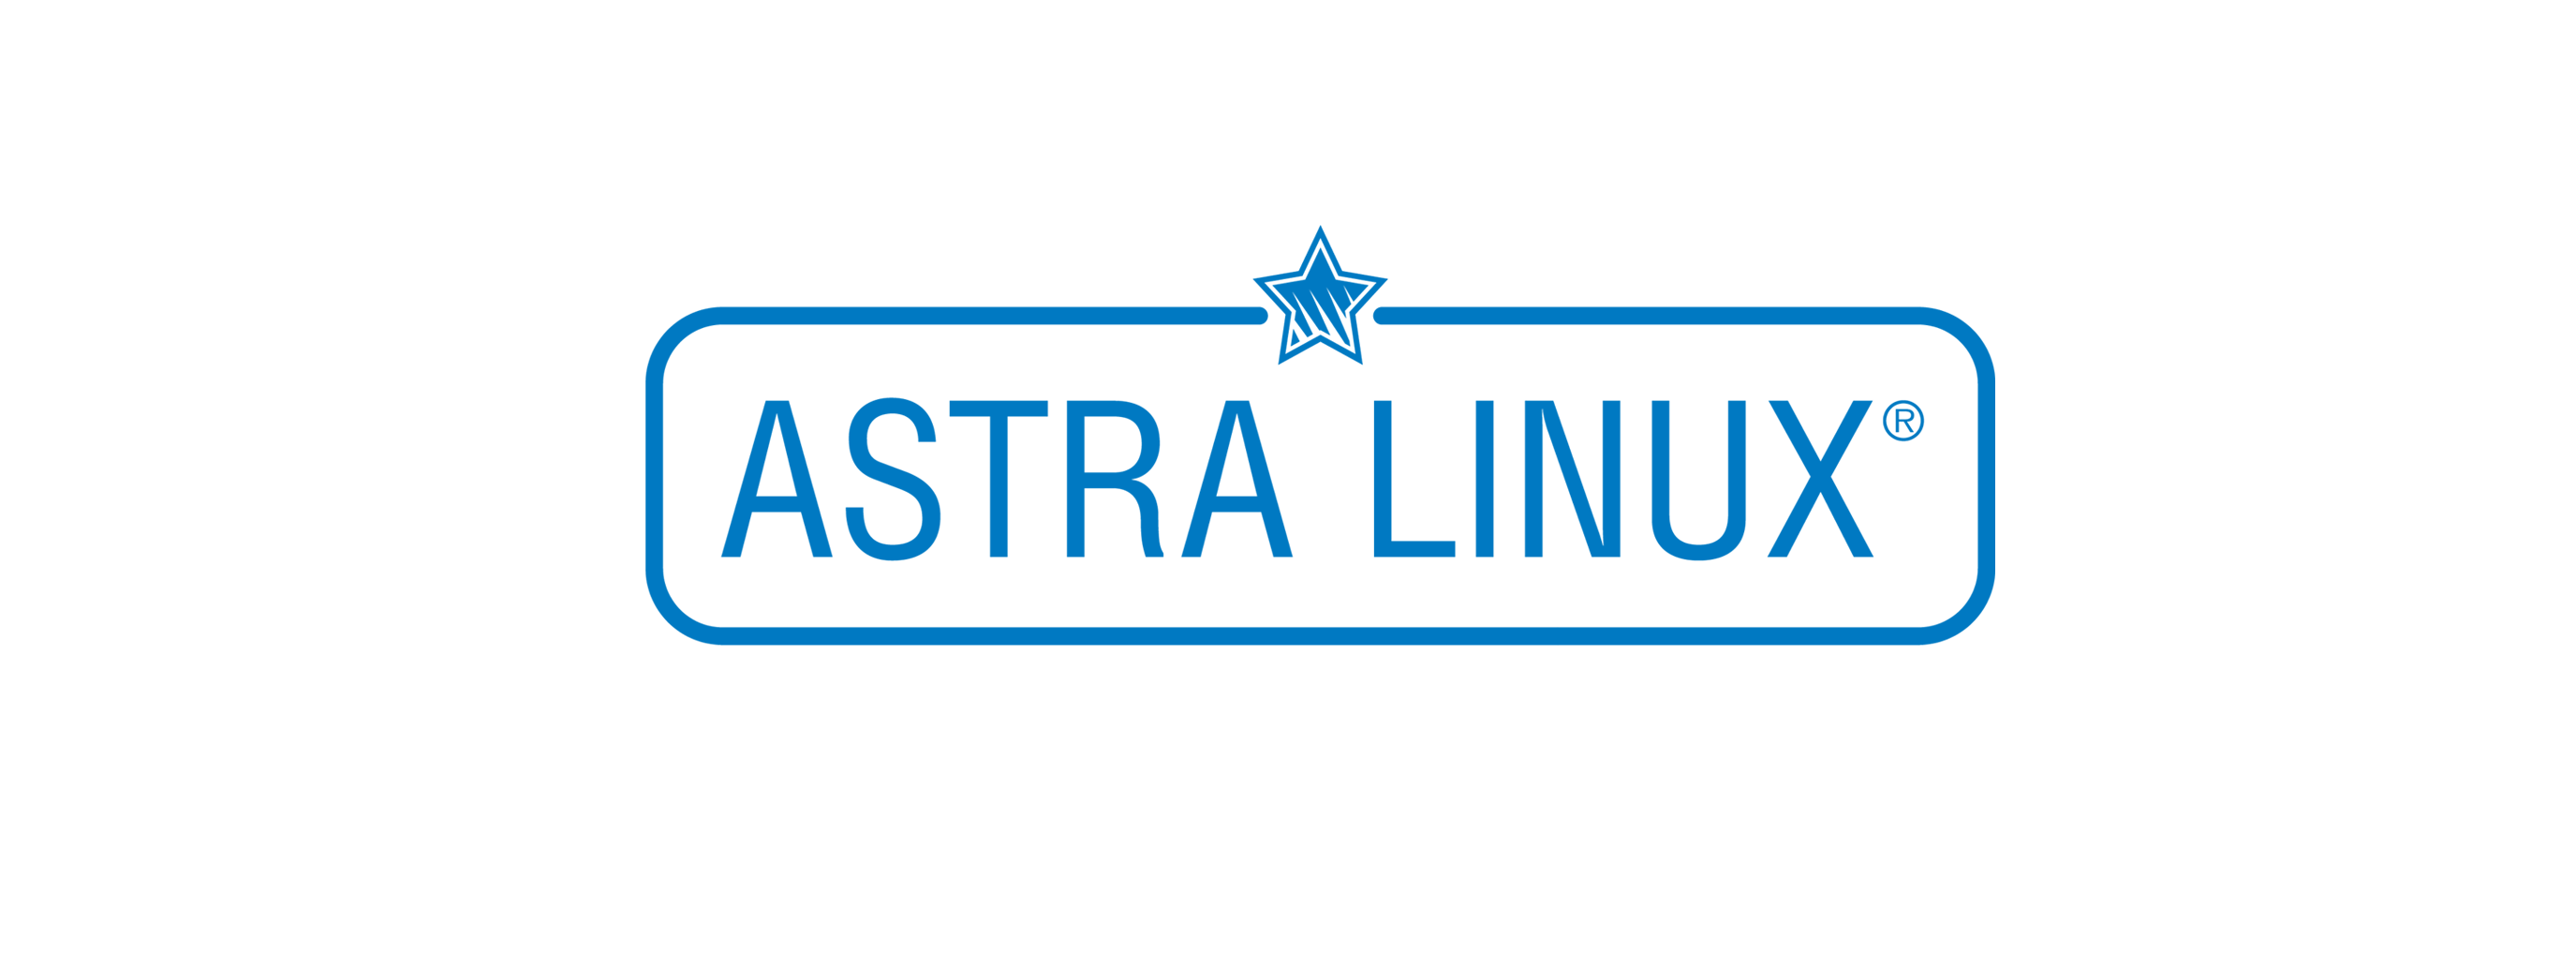 Лицензия РусБИТех Astra Linux Special Edition (очередное обновление 1.7), уровень защищенности Максимальный (Смоленск), РУСБ.10015-01 (ФСТЭК), Russian, на срок действия исключительного права базовая лицензия для сервера до 2 сокетов, BOX (OS2101X8617BOXSK